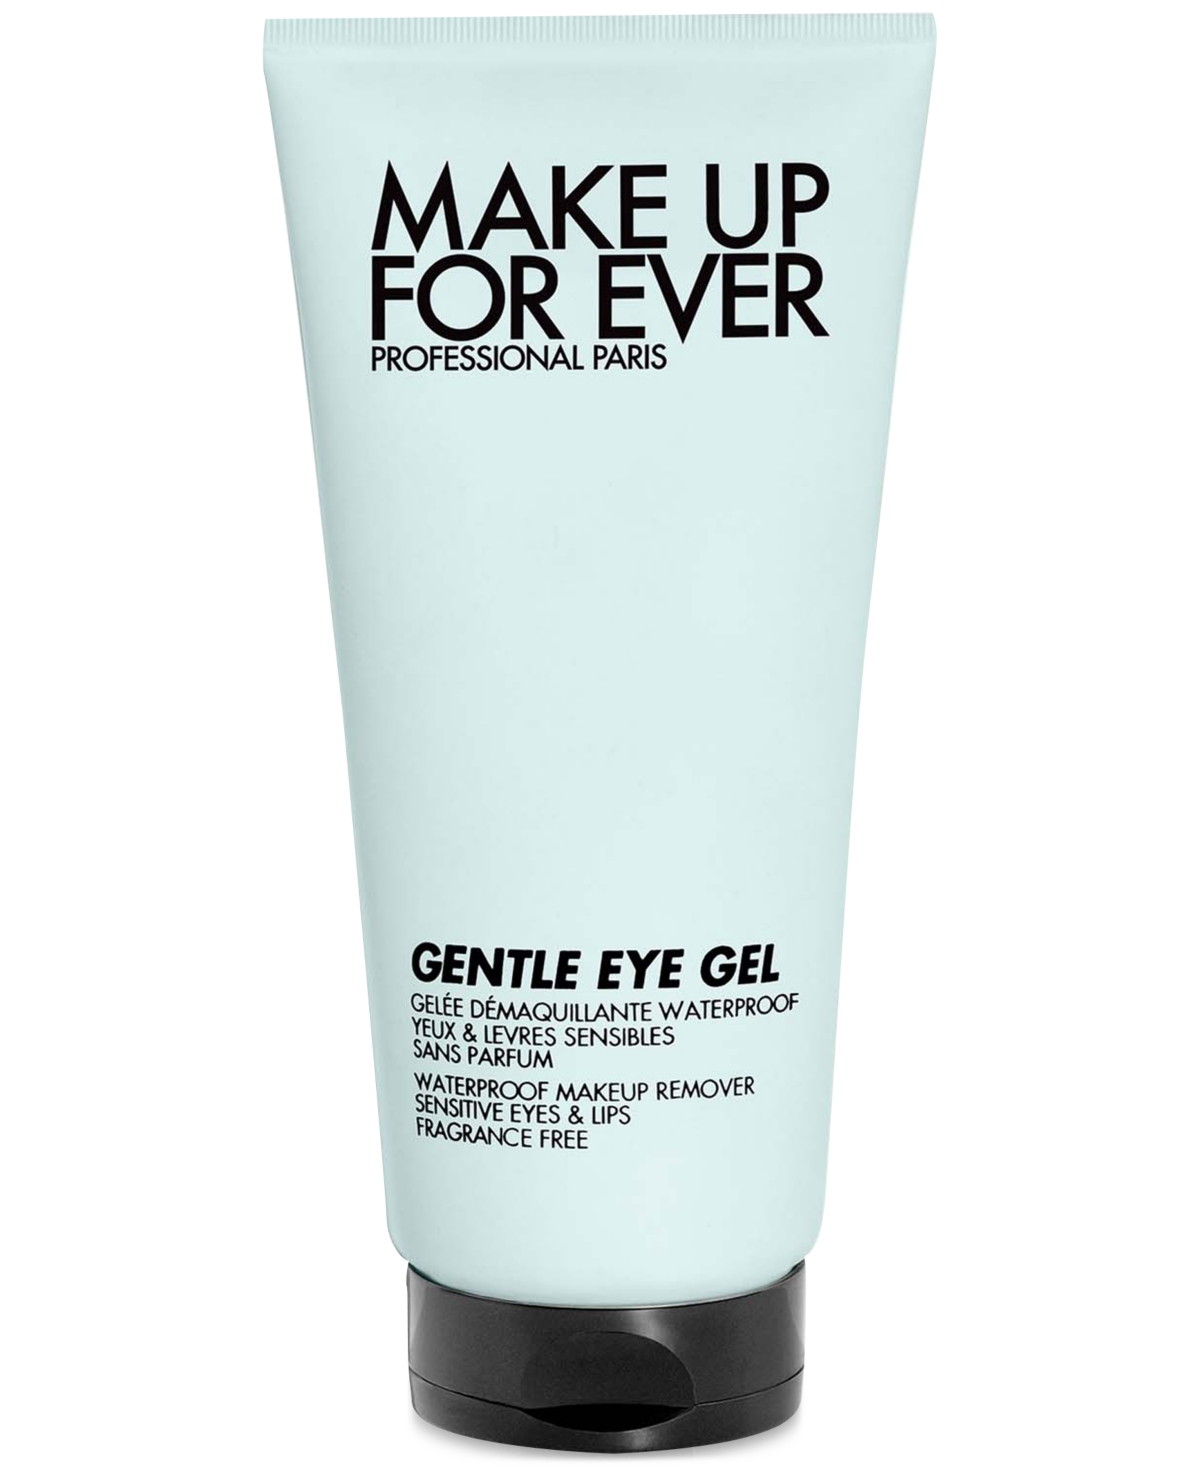 Gentle Eye Gel Waterproof Eye & Lip Makeup Remover Mini, 1.7 oz.